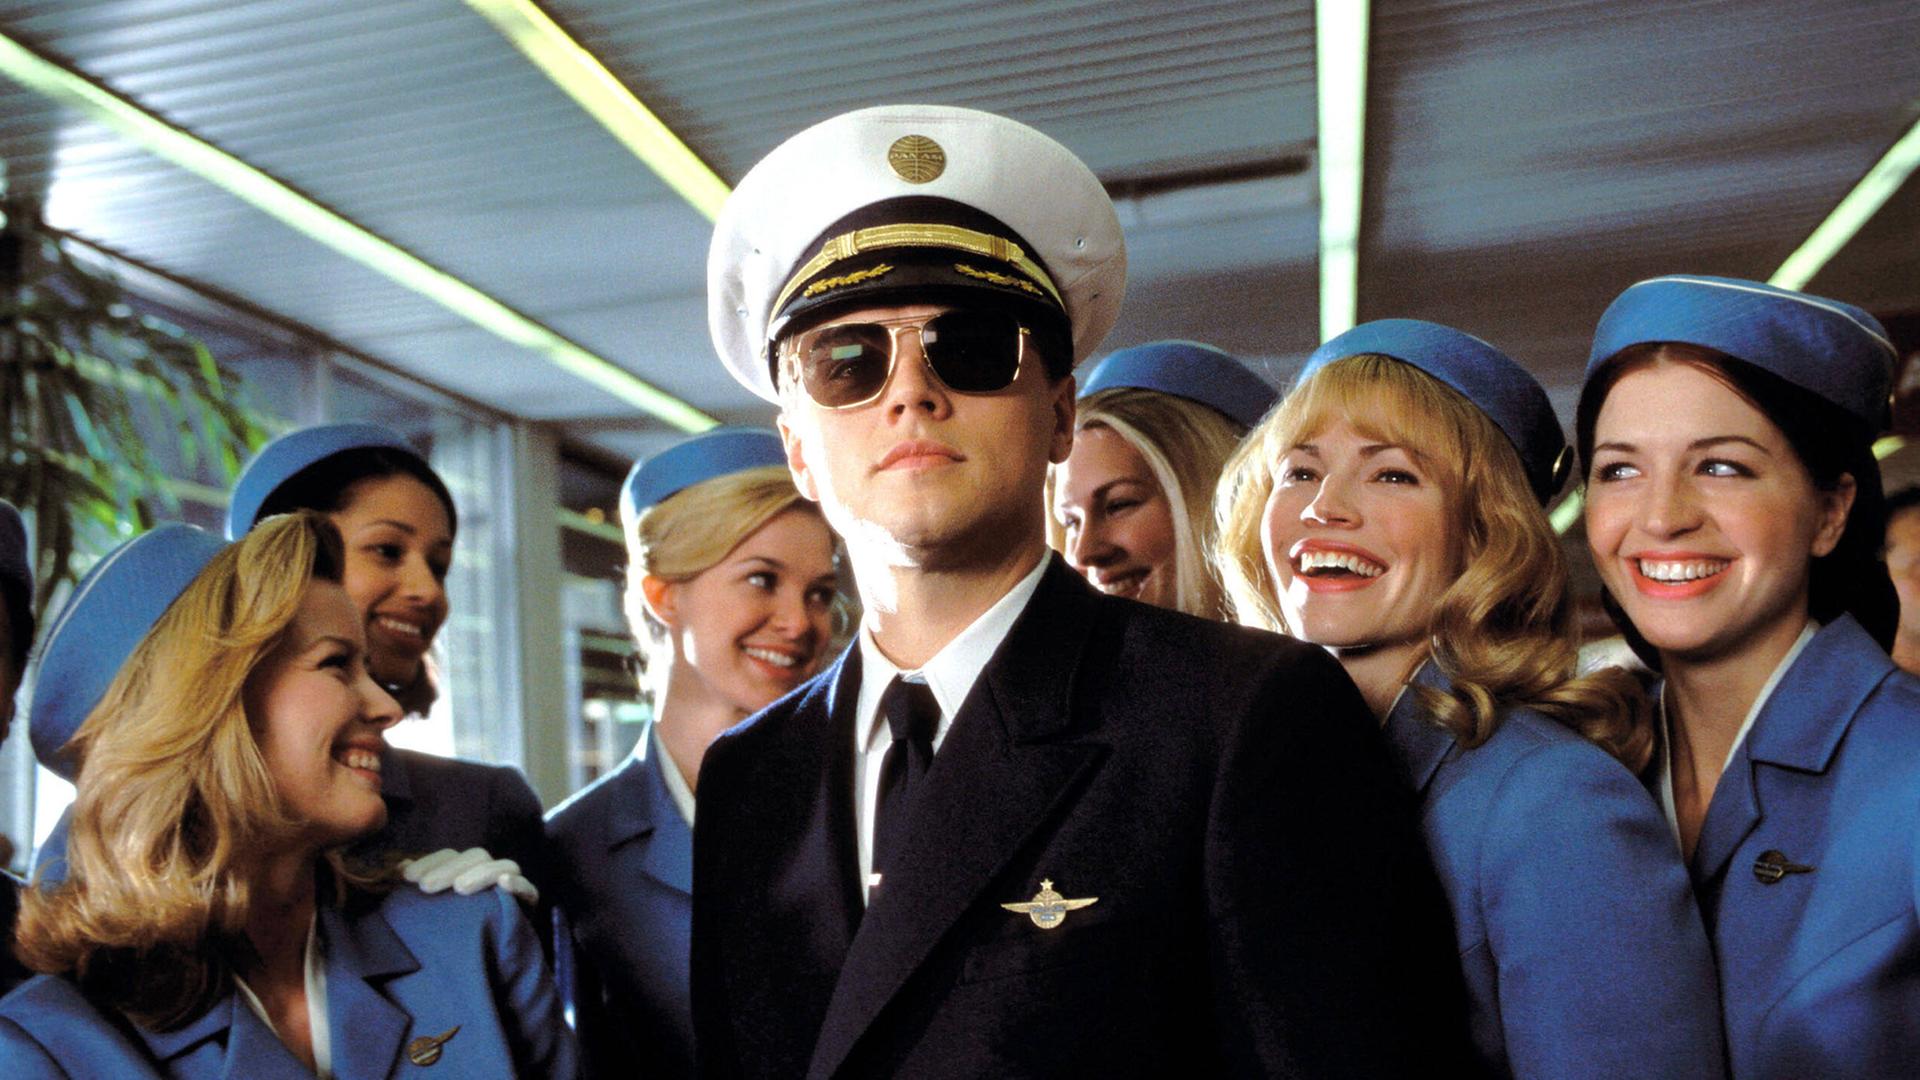 Leonardo Di Caprio als hochstapelnder vermeintlicher Pilot umringt von Stewardessen im Film "CATCH ME IF YOU CAN" von 2002